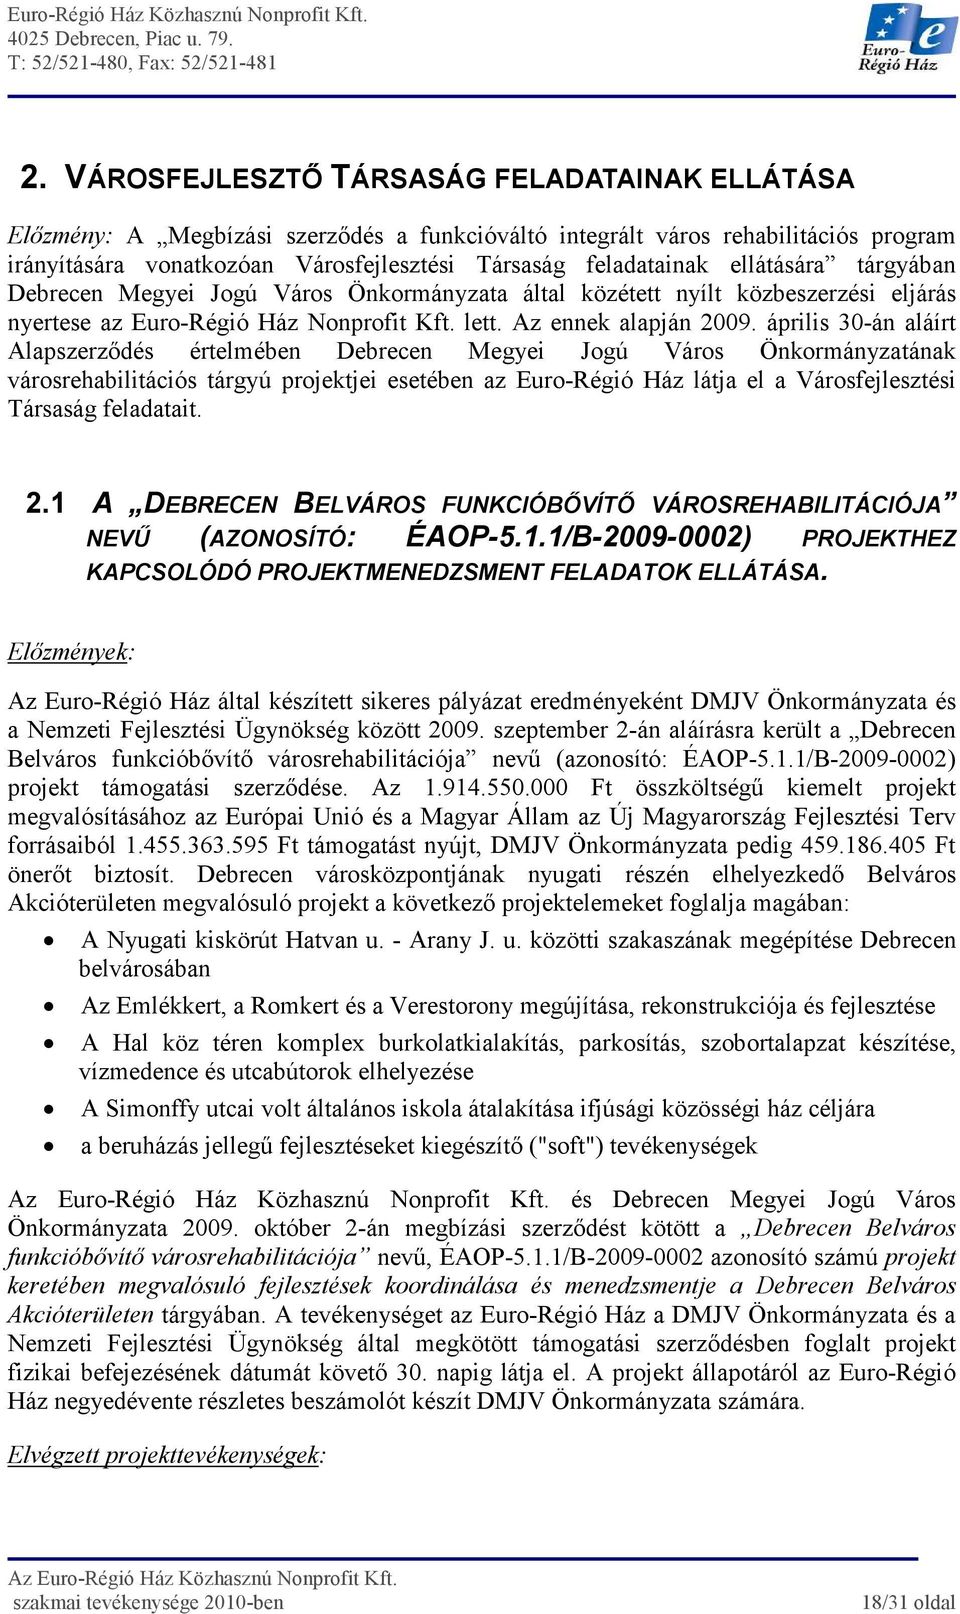 április 30-án aláírt Alapszerzıdés értelmében Debrecen Megyei Jogú Város Önkormányzatának városrehabilitációs tárgyú projektjei esetében az Euro-Régió Ház látja el a Városfejlesztési Társaság